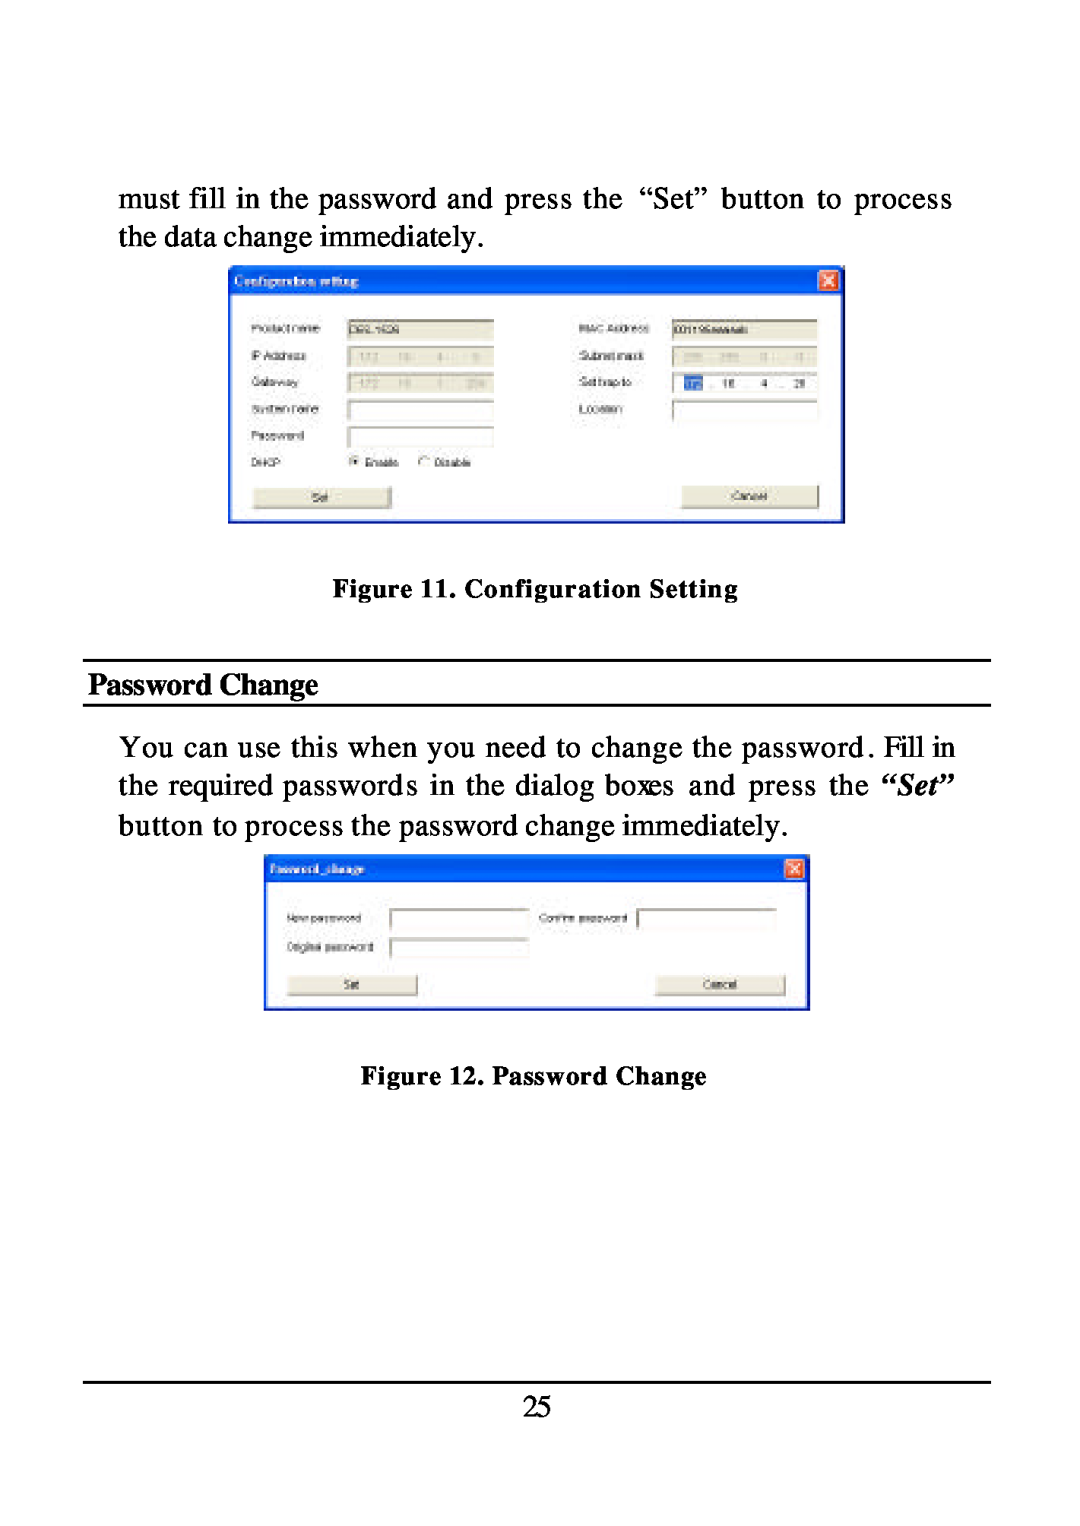 D-Link DES-1526 manual Password Change 